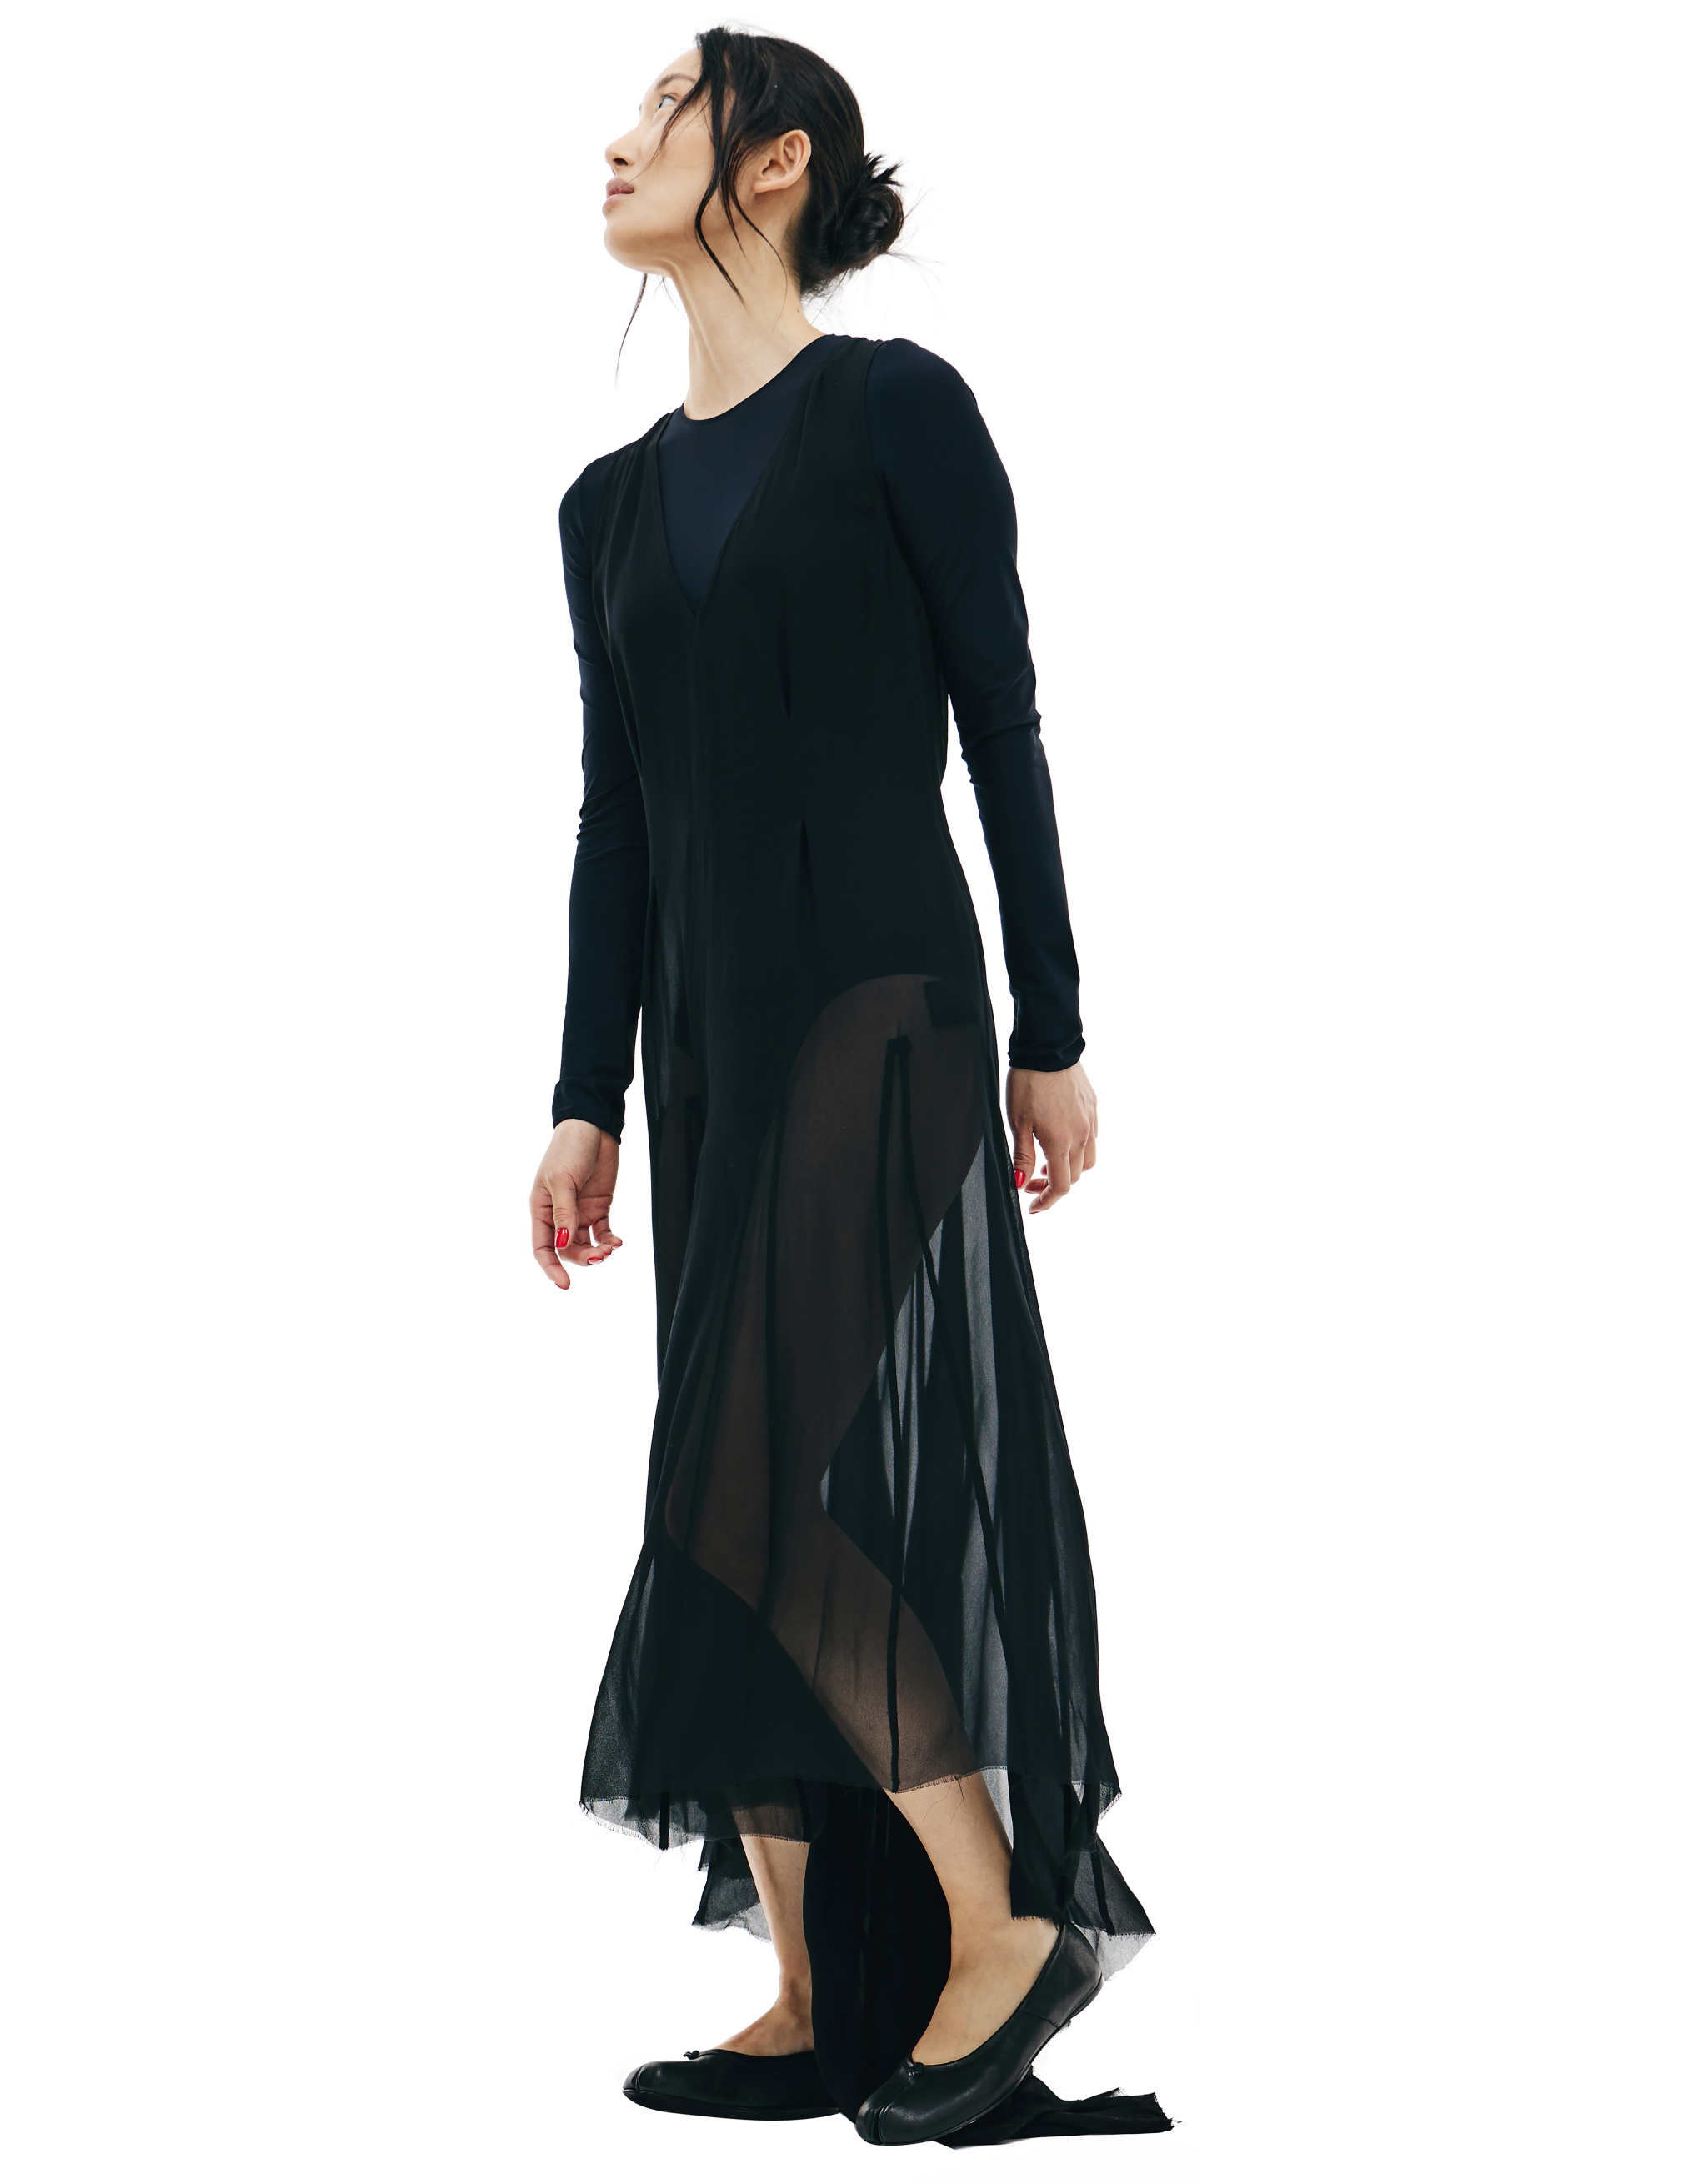 Черное полупрозрачное платье с удлиненной спинкой Ann Demeulemeester 2002-2260-140-099, размер 40;38 - фото 2